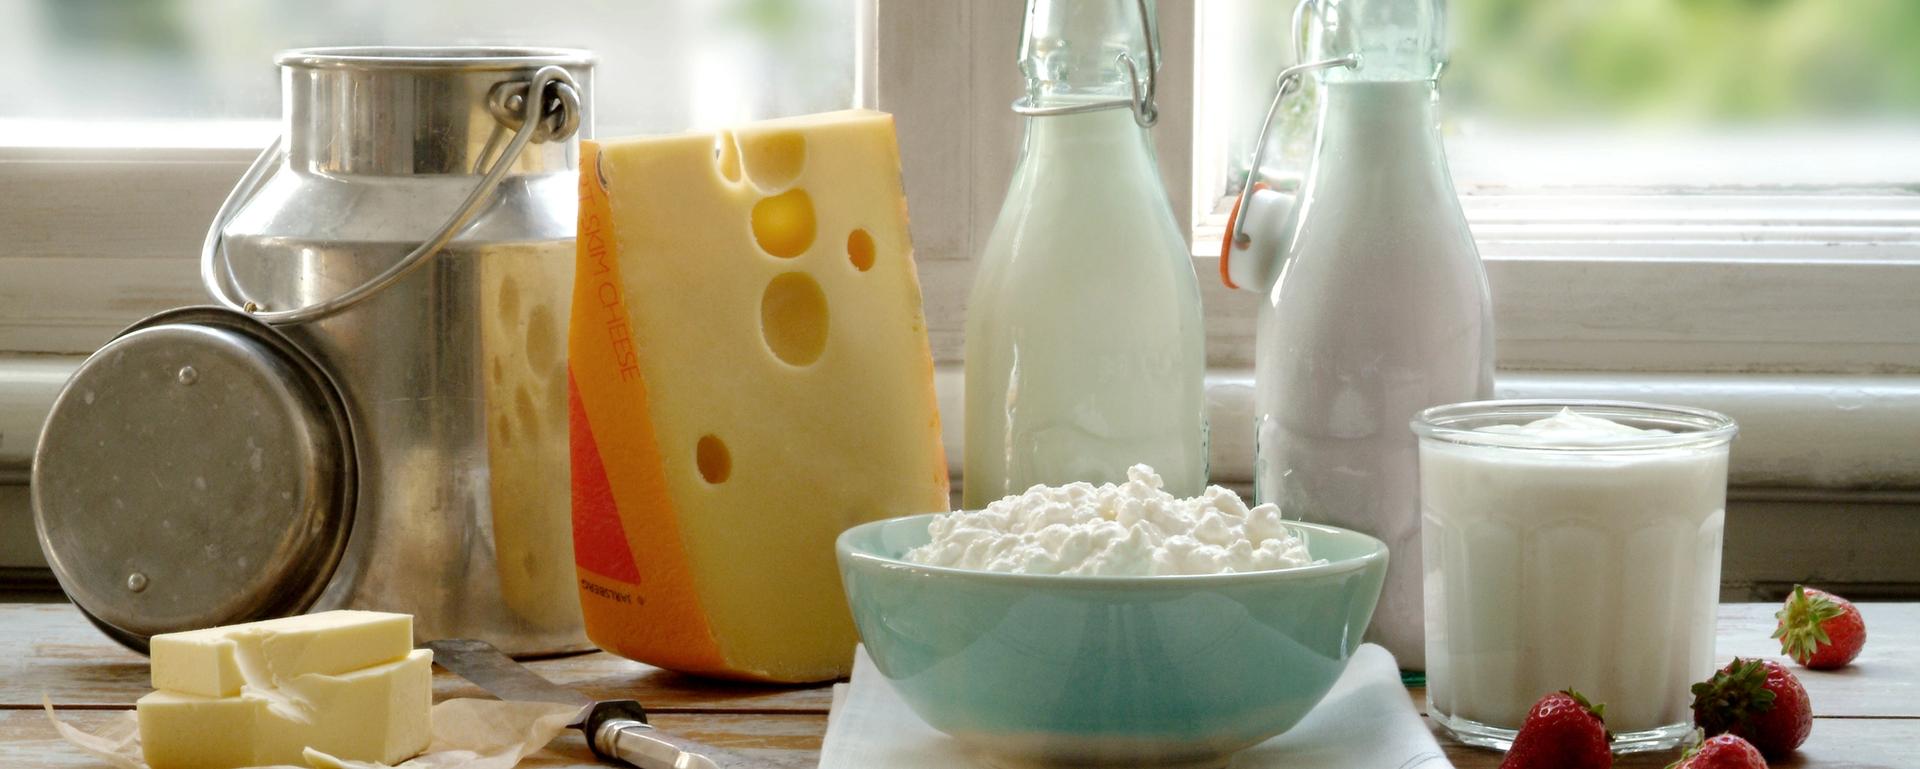 Et utvalg meieriprodukter, ost yoghurt, melk